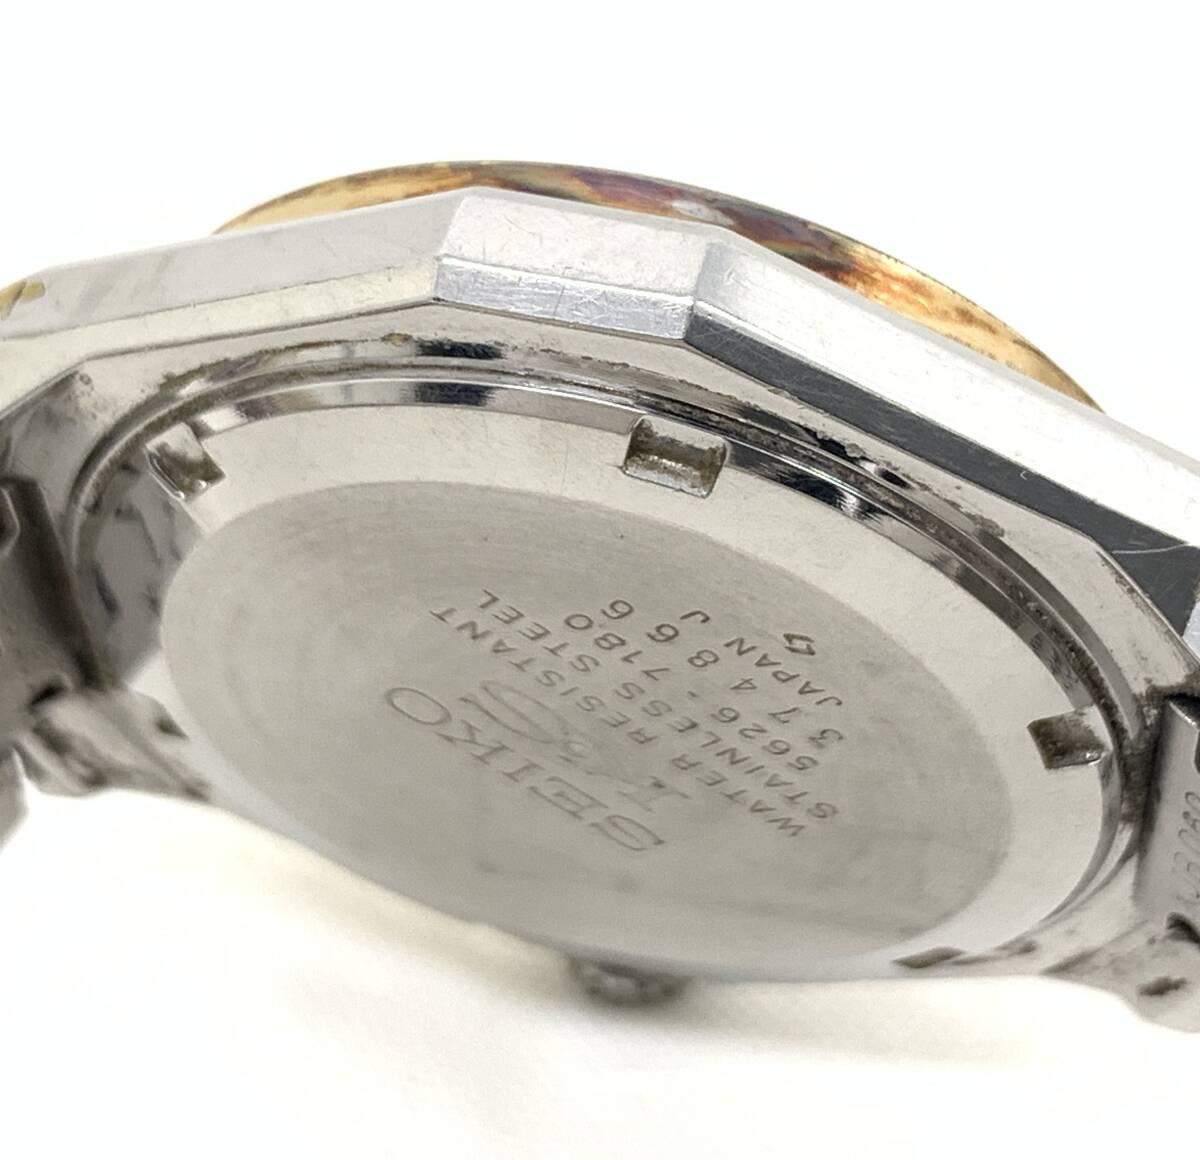 T03/104 SEIKO KS キングセイコー VANAC カットガラス 自動巻き AUTOMATIC オートマチック 純正ブレス 腕時計 5626-7180 グリーンの画像5